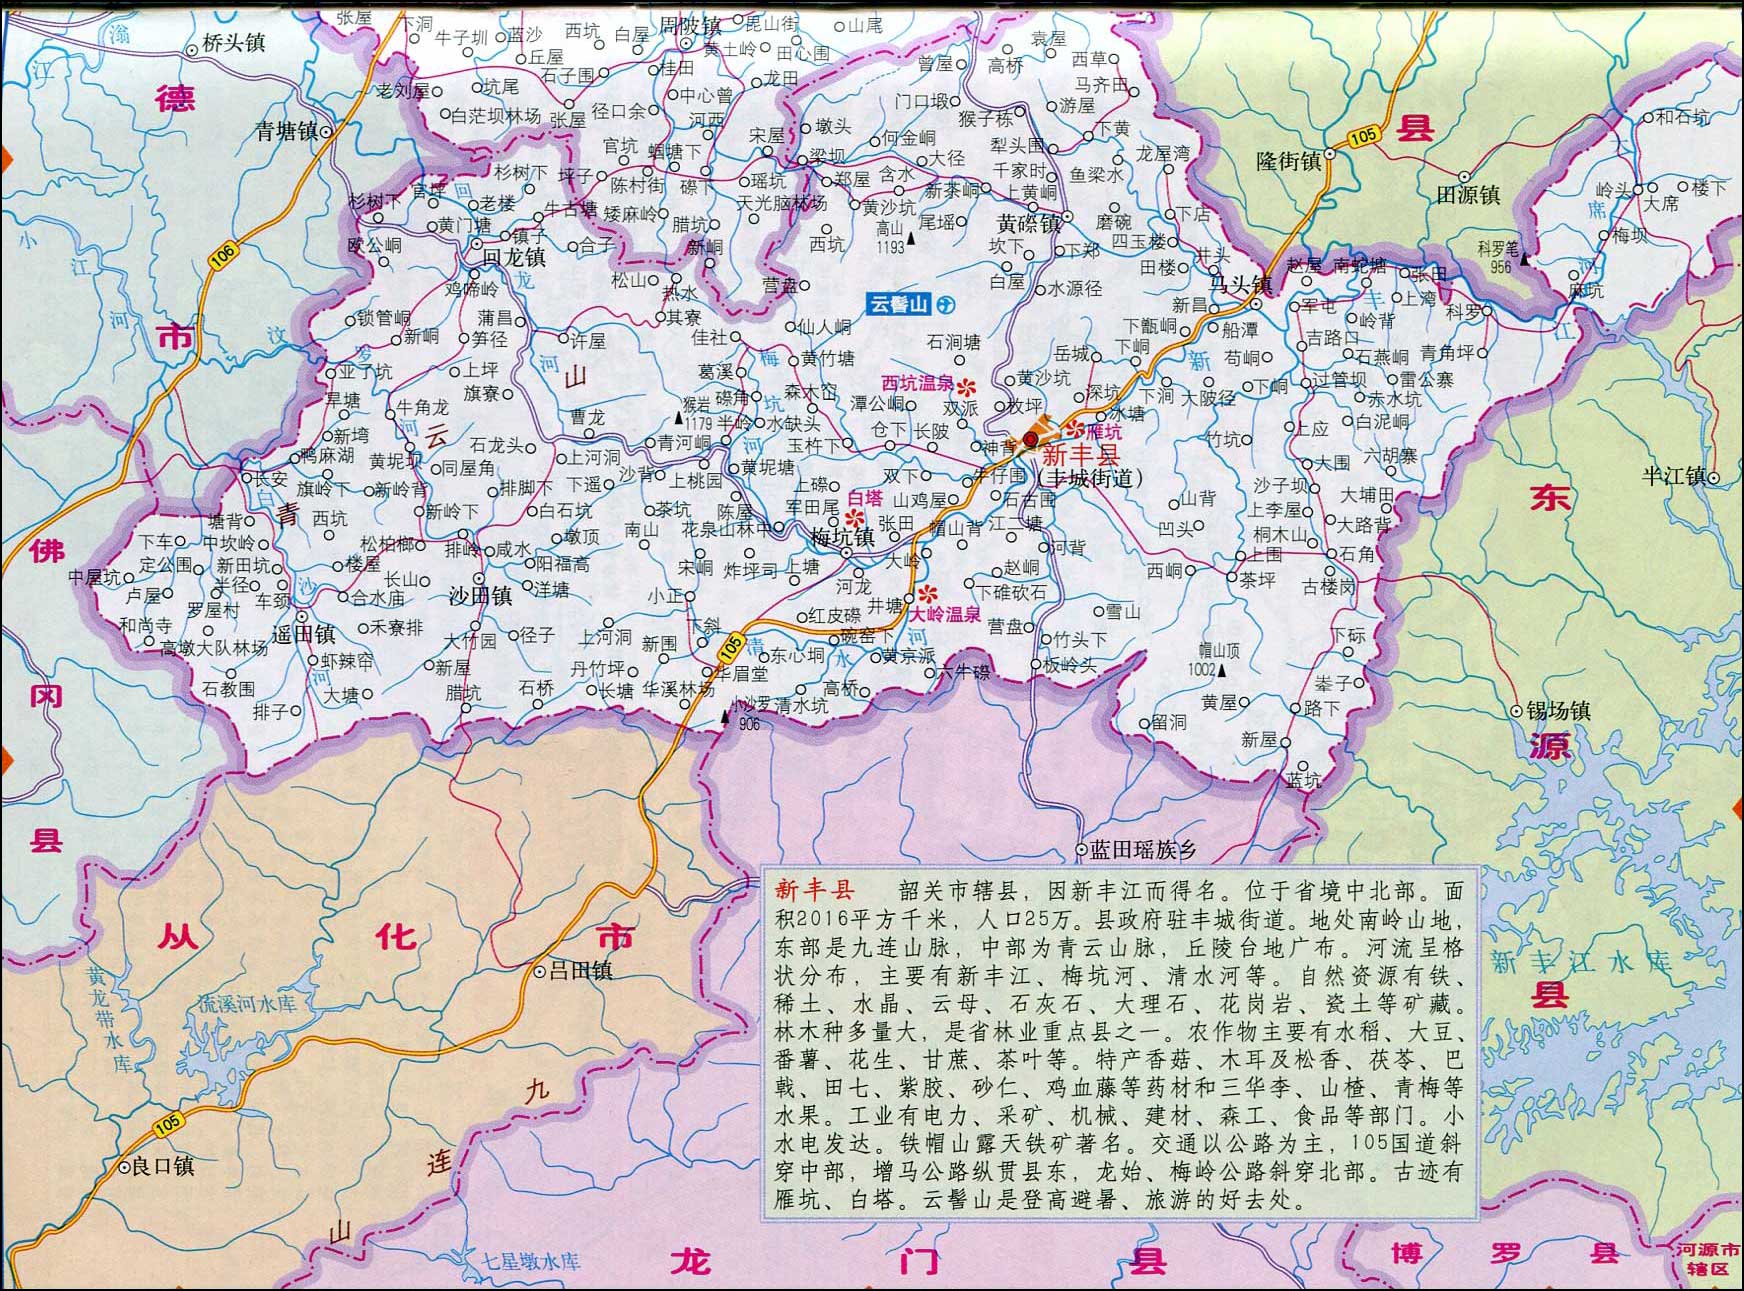 中国地图 广东 韶关市 >> 新丰县地图  相关链接: 广州市  深圳市图片